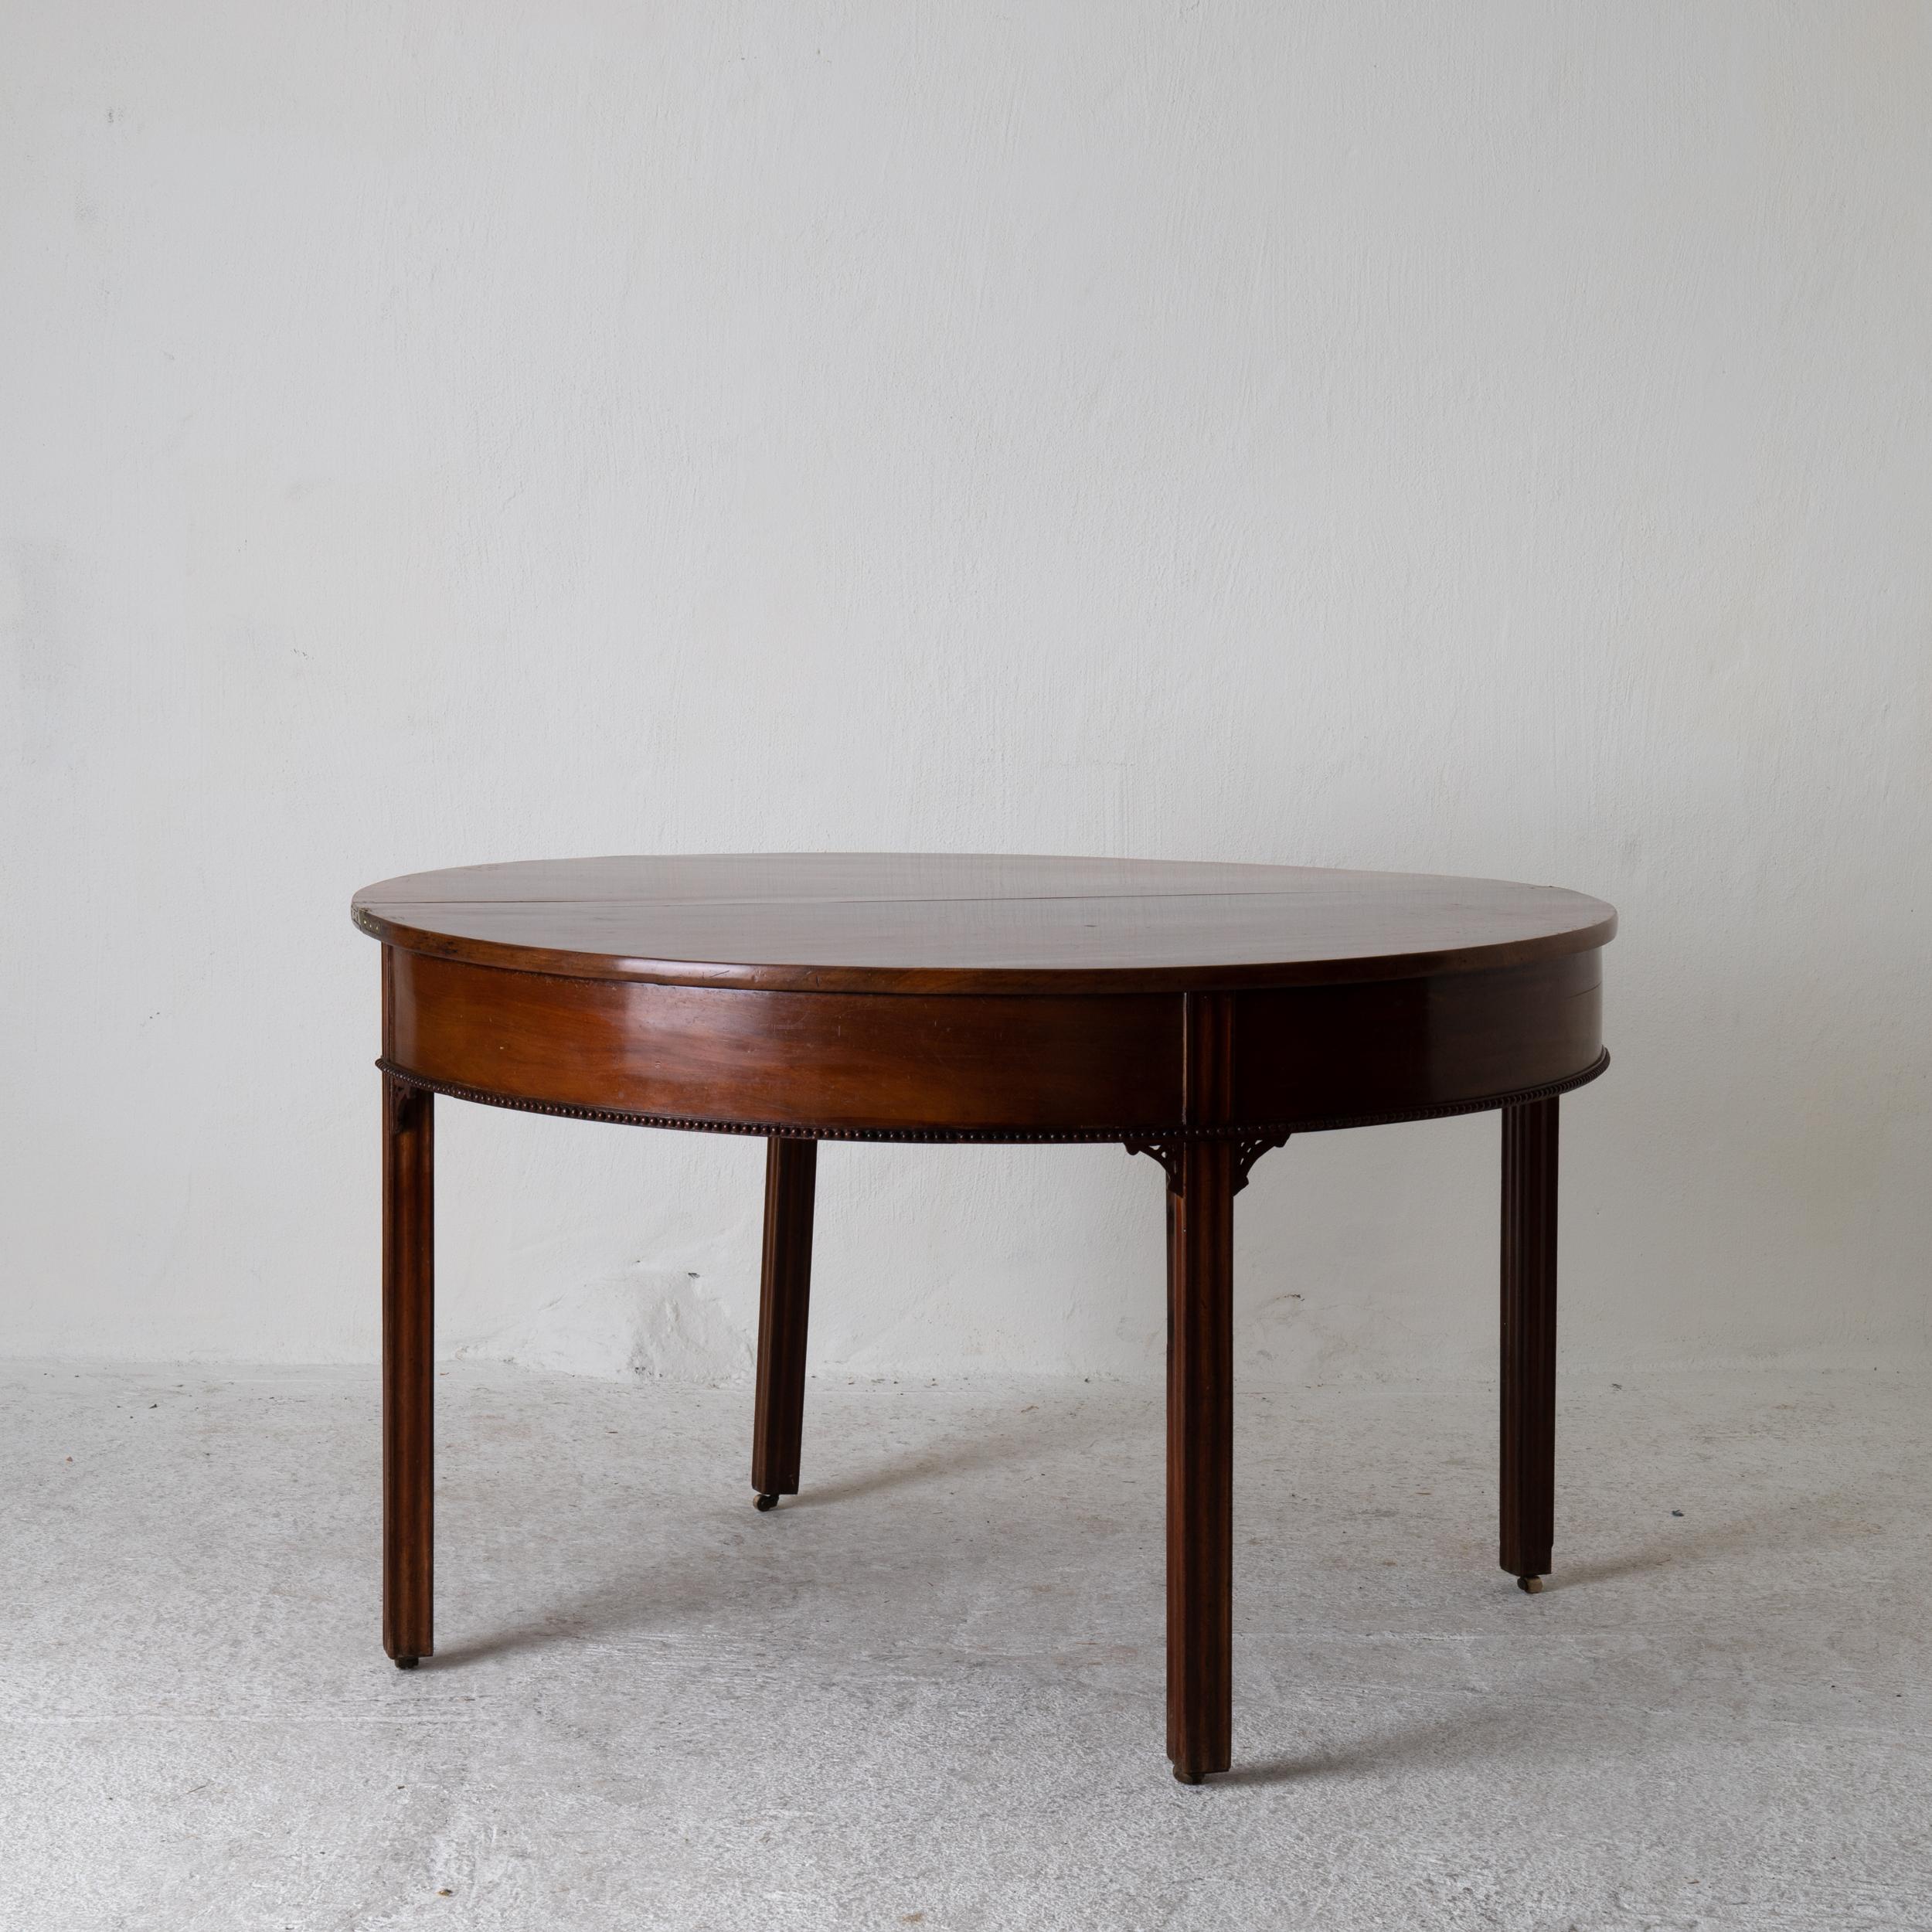 Tabelle Spieltisch Gustavian Swedish demilune mahagoni braun, Schweden. Ein Spieltisch aus der Gustavianischen Zeit in Schweden. Furniert in dunkelbraunem Mahagoni, verziert mit einer Perlenkette und geriffelten Beinen. Demilune-Form, die sich zu